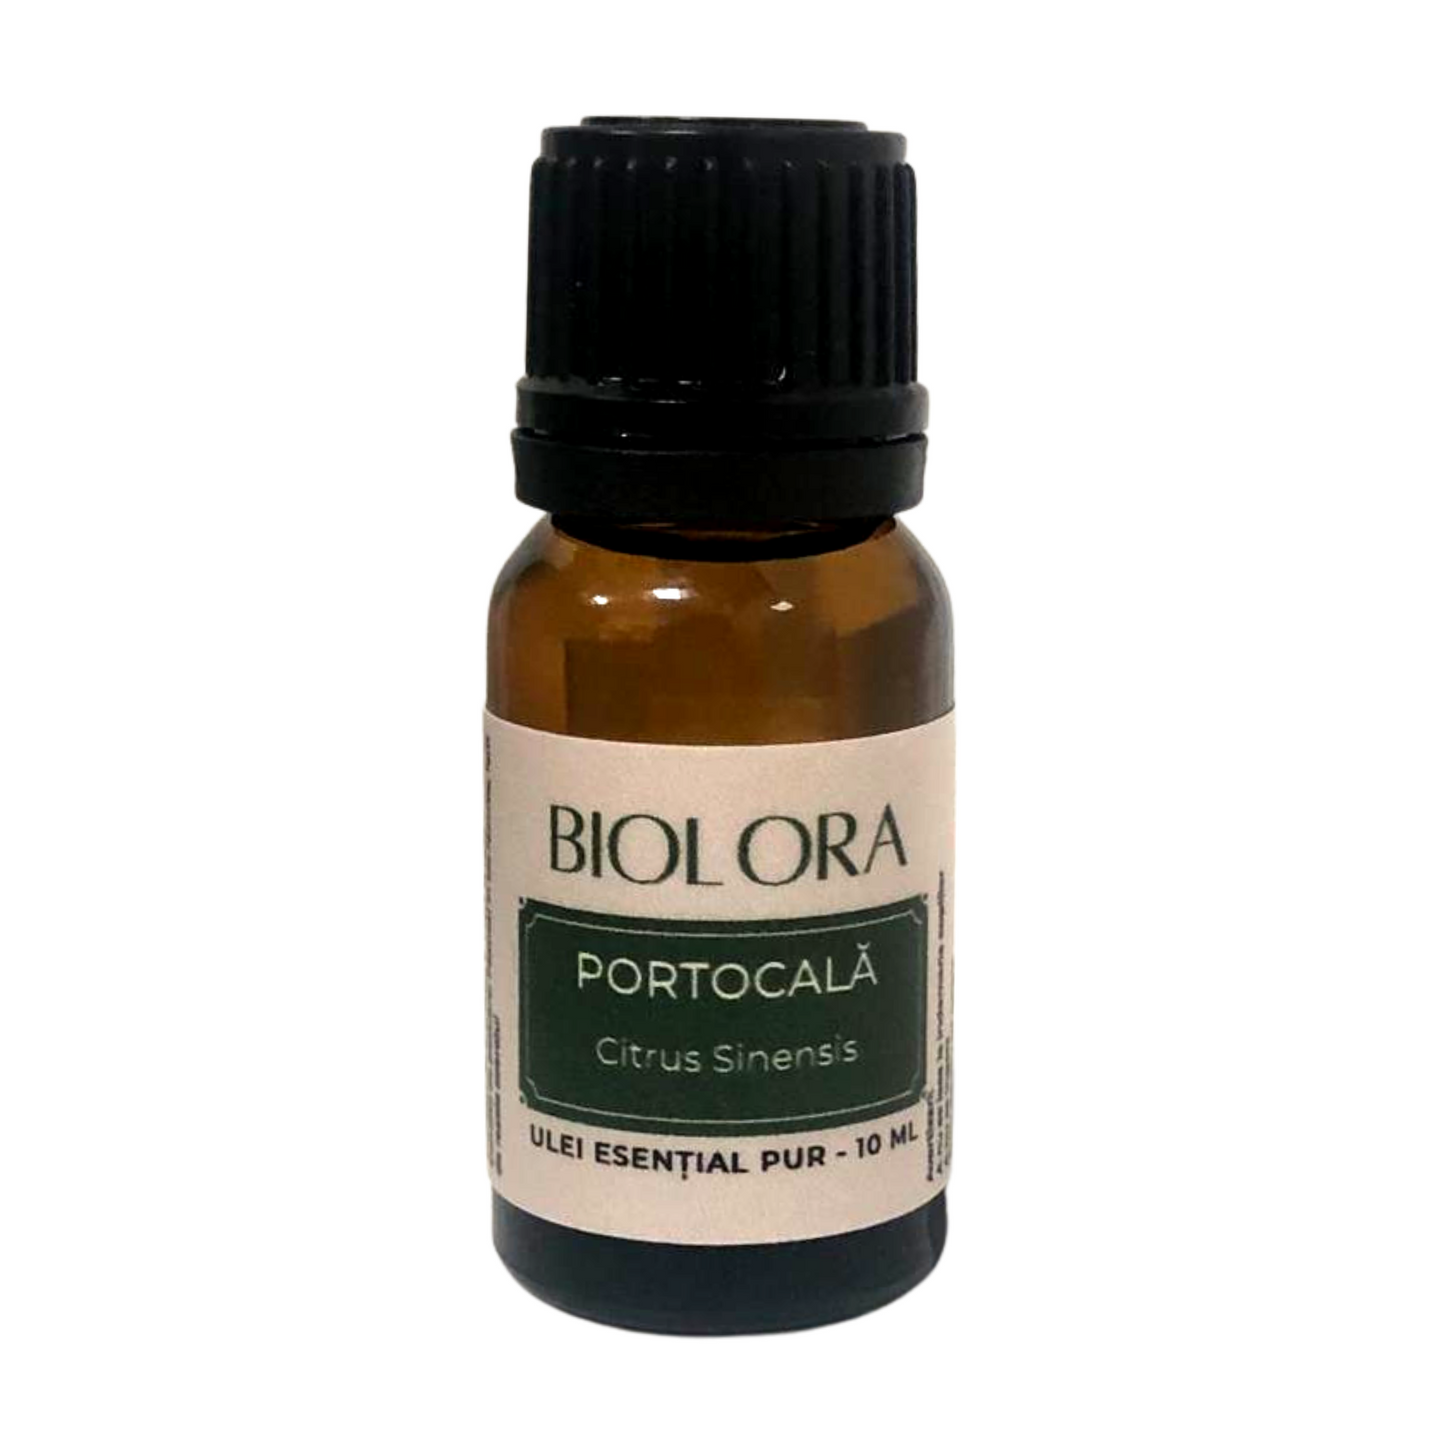 Ulei Esential de Portocala Biolora, aromaterapie, puritate 100%, nediluat, 10 ml